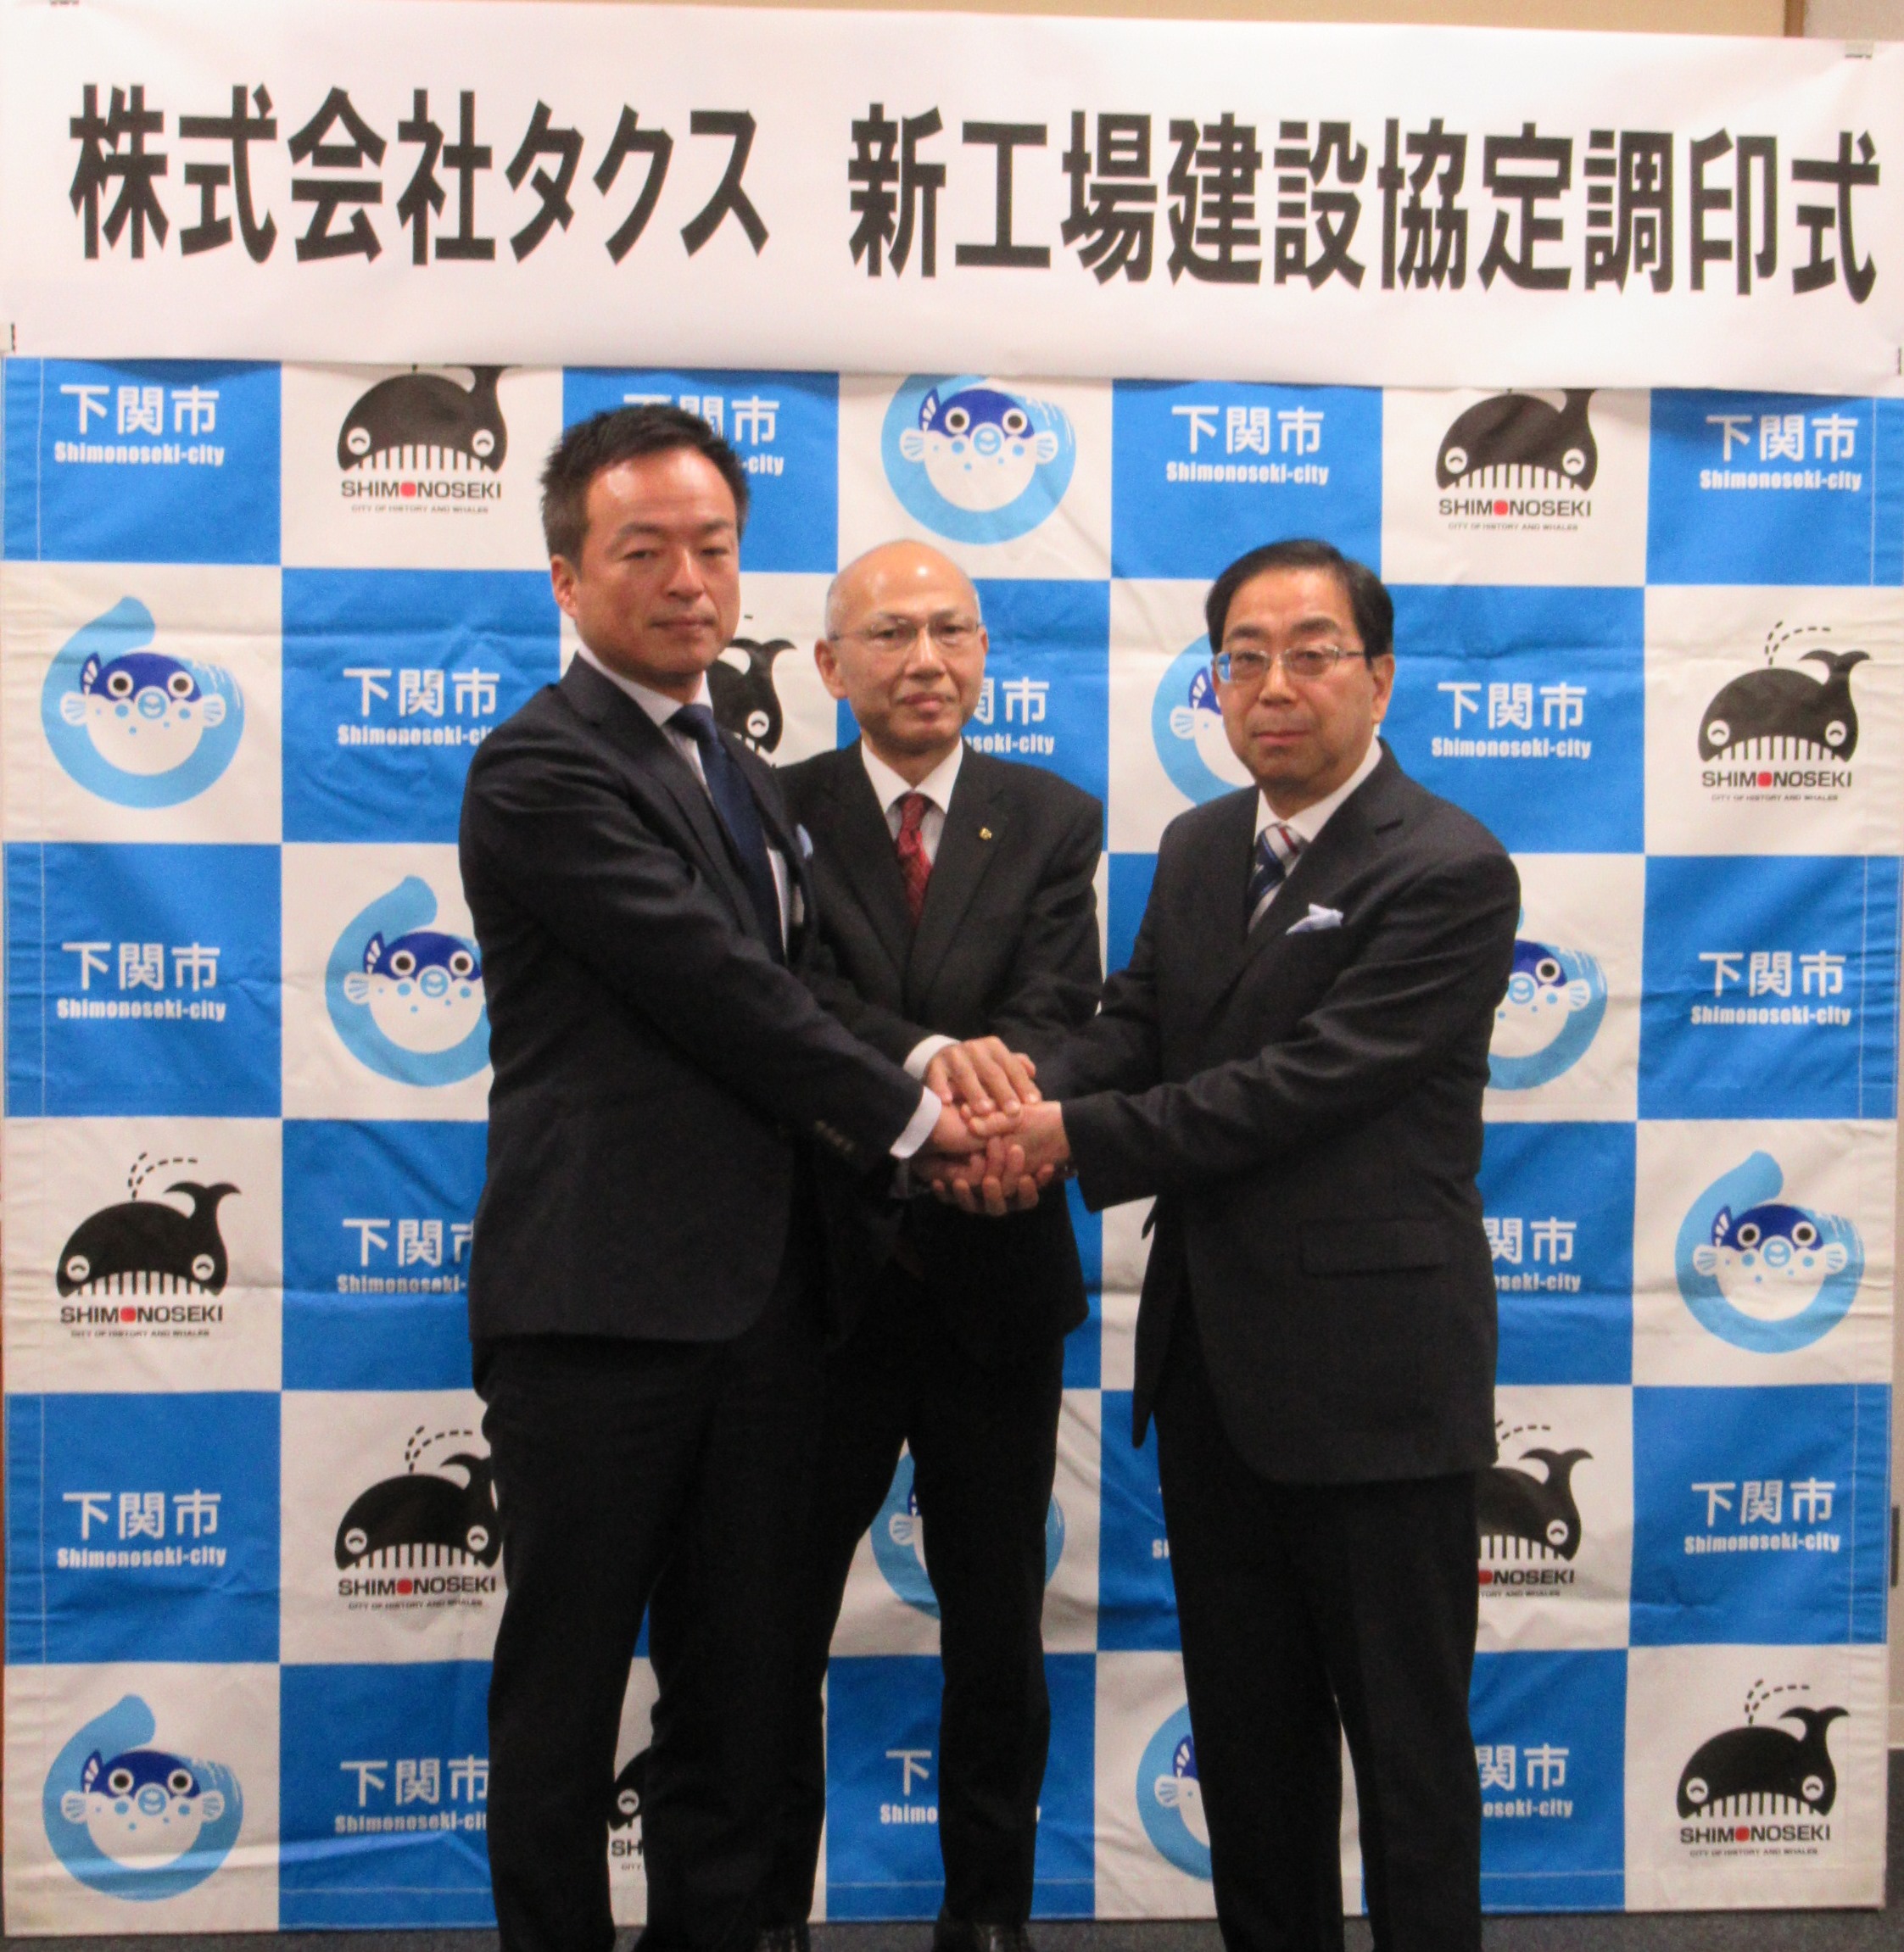 令和2年2月7日 株式会社タクスの新工場建設に係る協定の調印式が下関市役所で行われました。